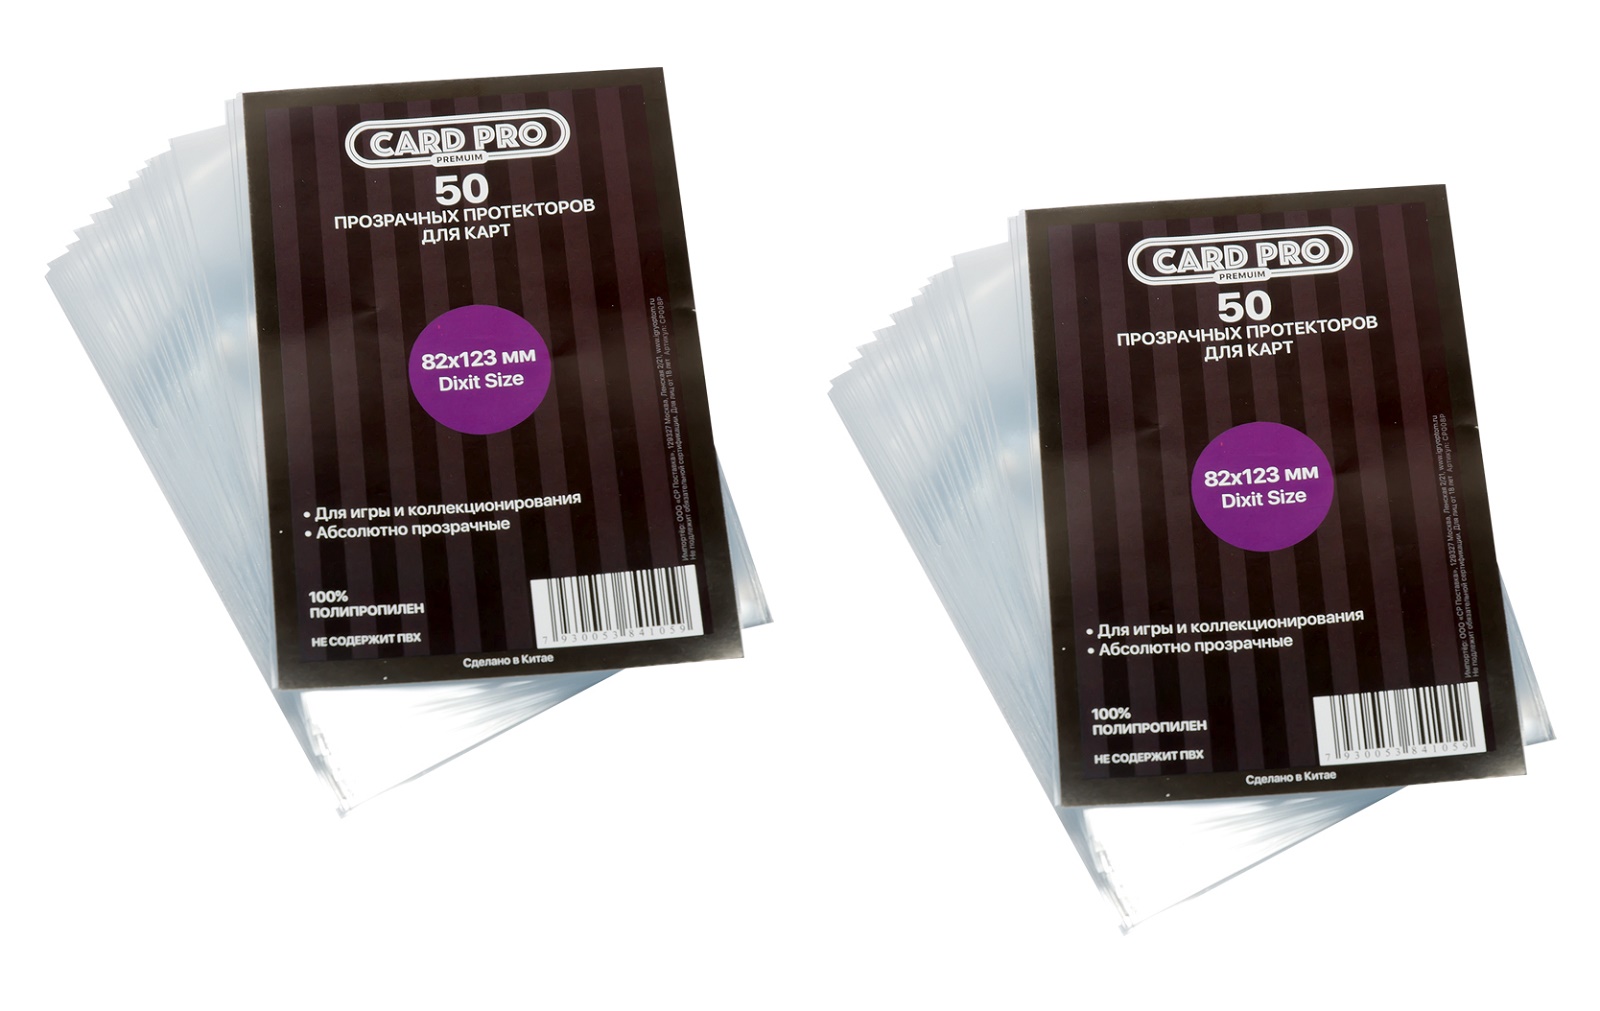 Протекторы Card-Pro PREMIUM Dixit Size для настольных игр 82x123 мм. 2 пачки